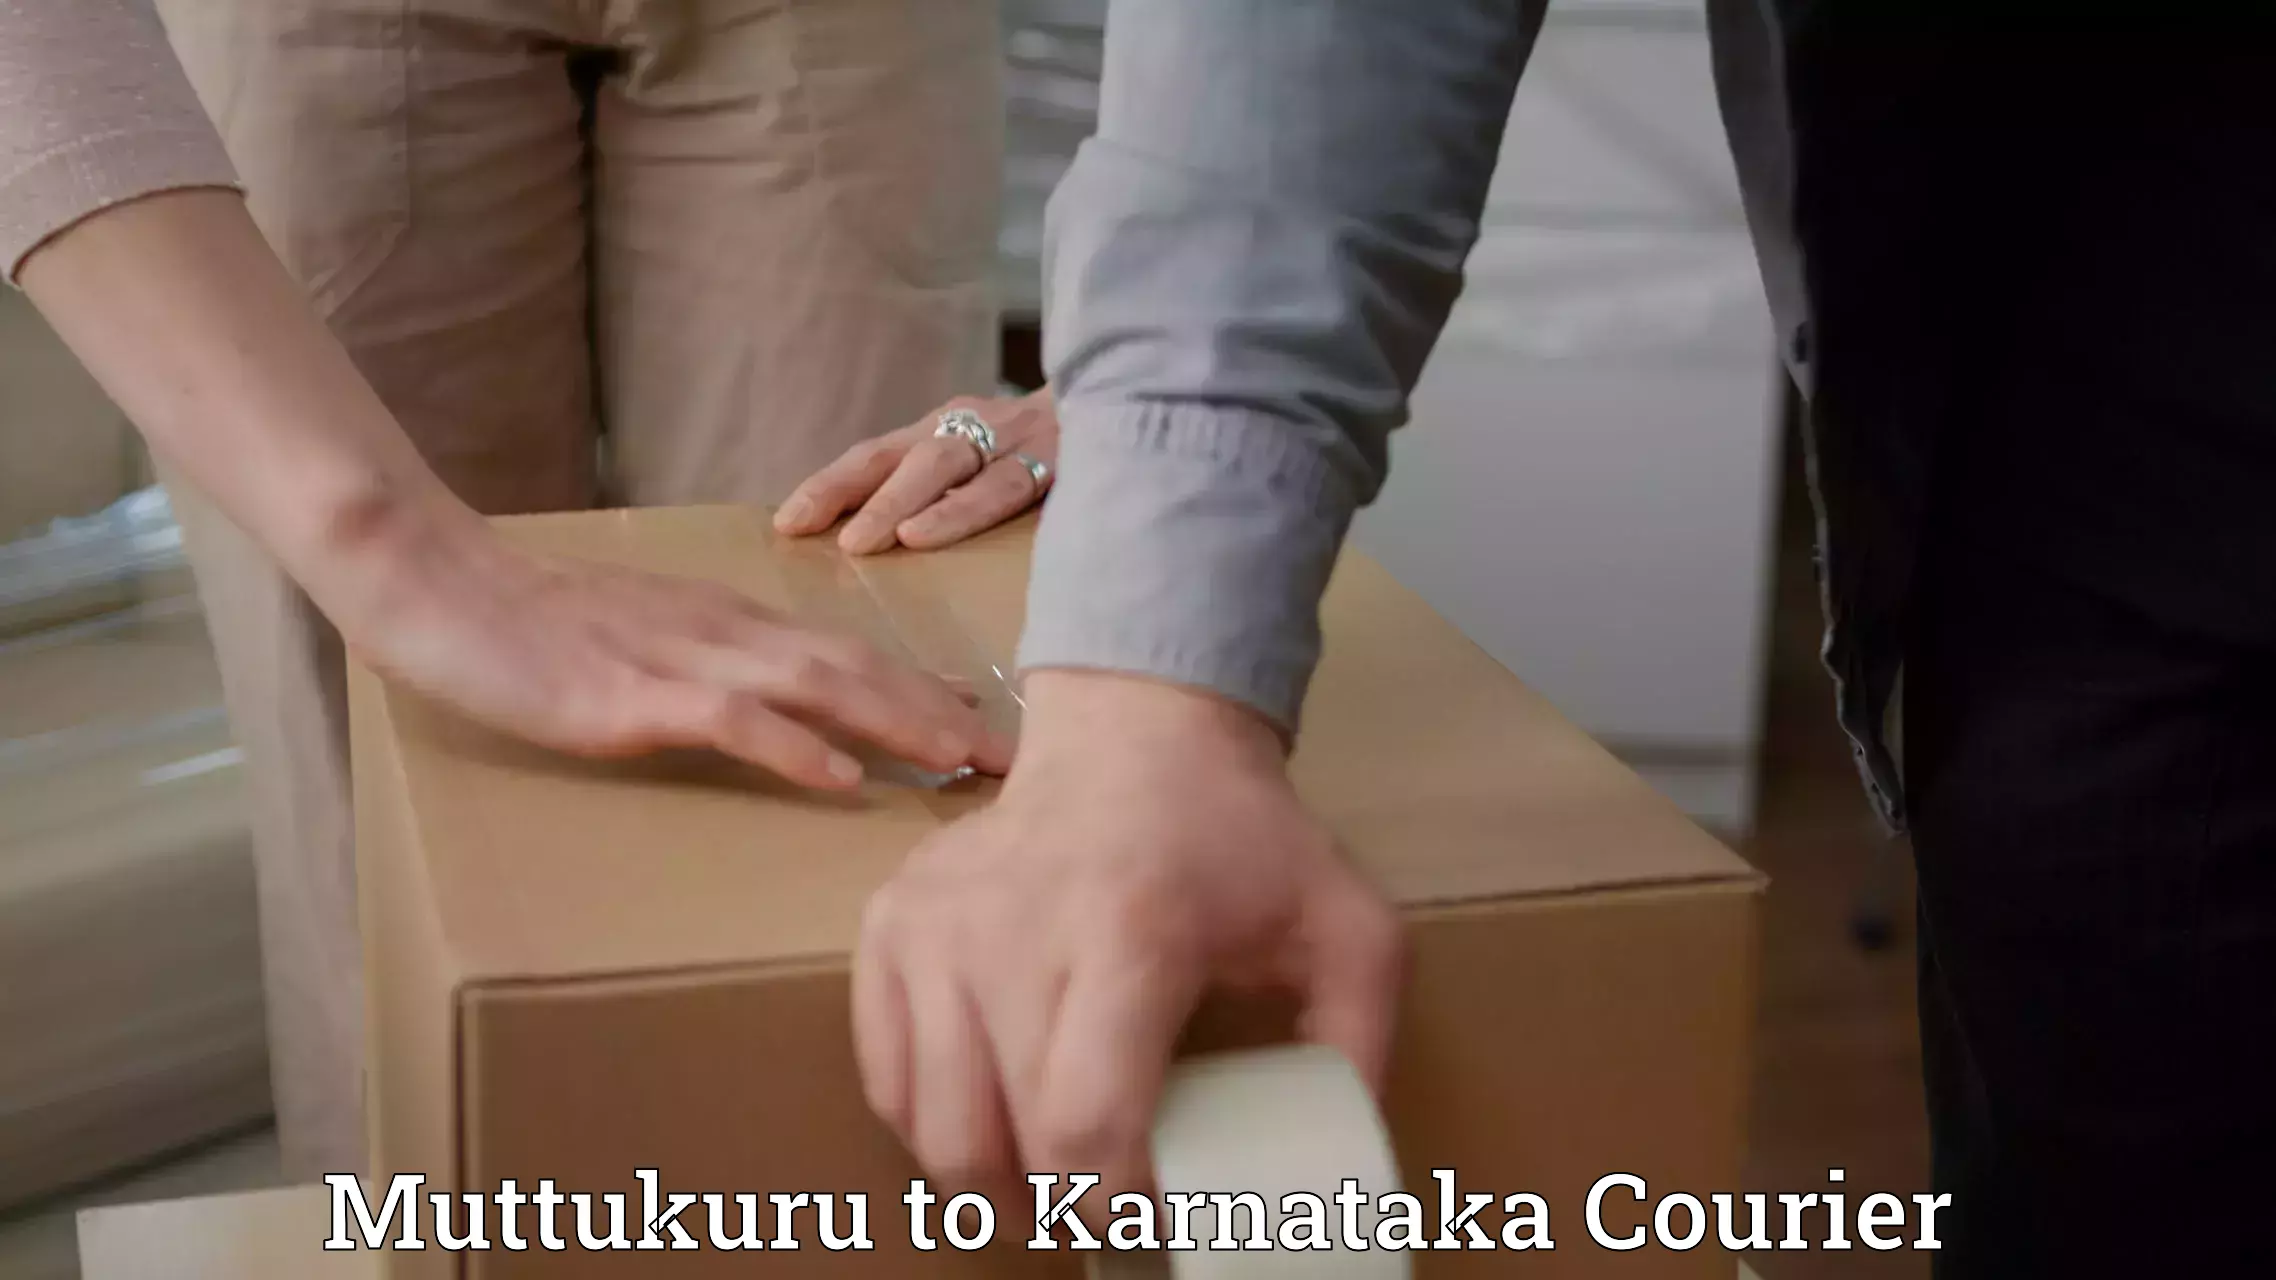 Customer-focused courier Muttukuru to Karnataka